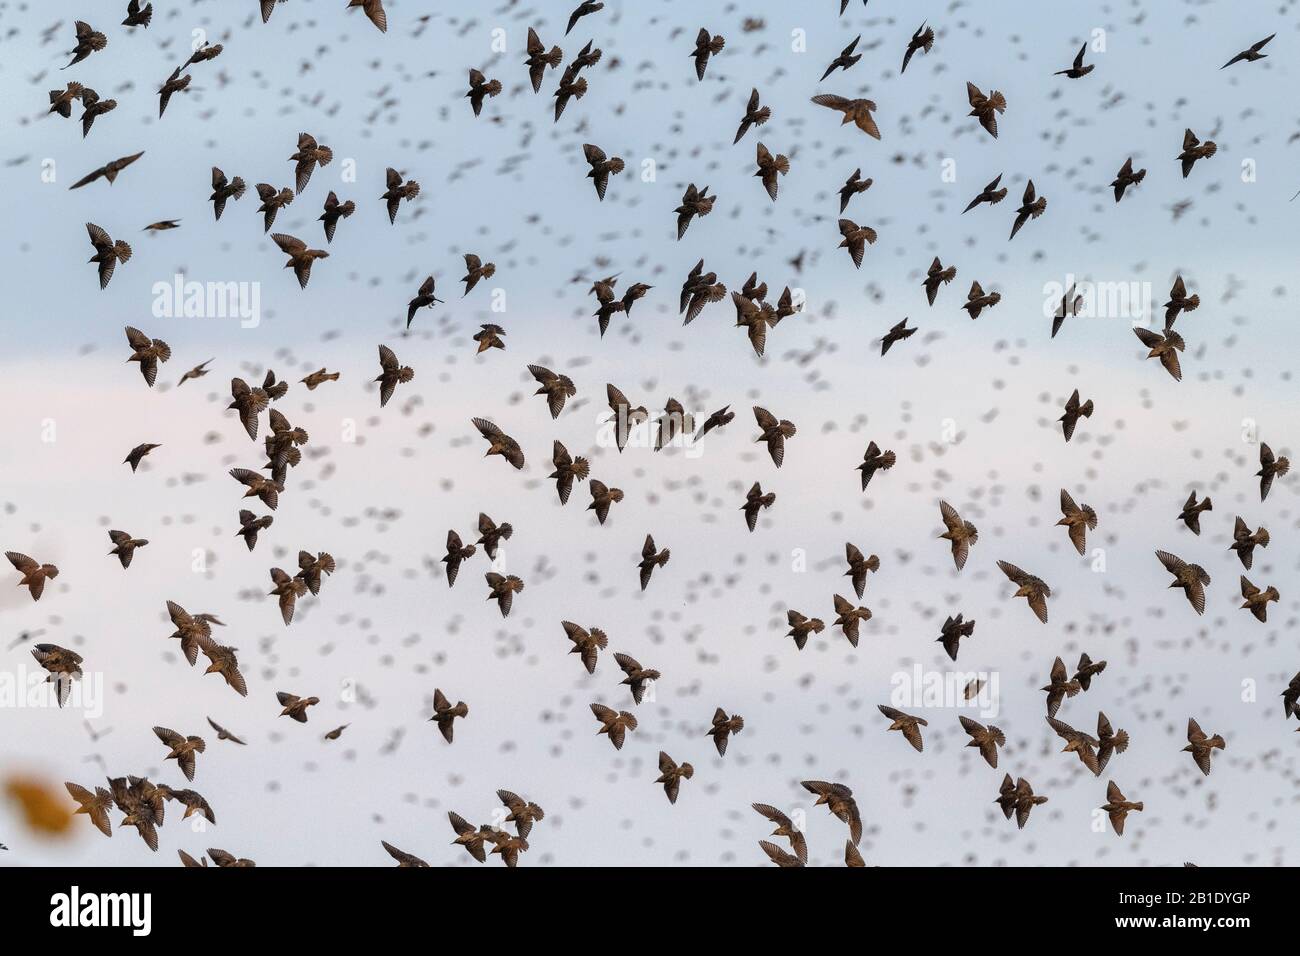 Starlings, Sturnus vulgaris, in flocks prior to evening roosting. Stock Photo